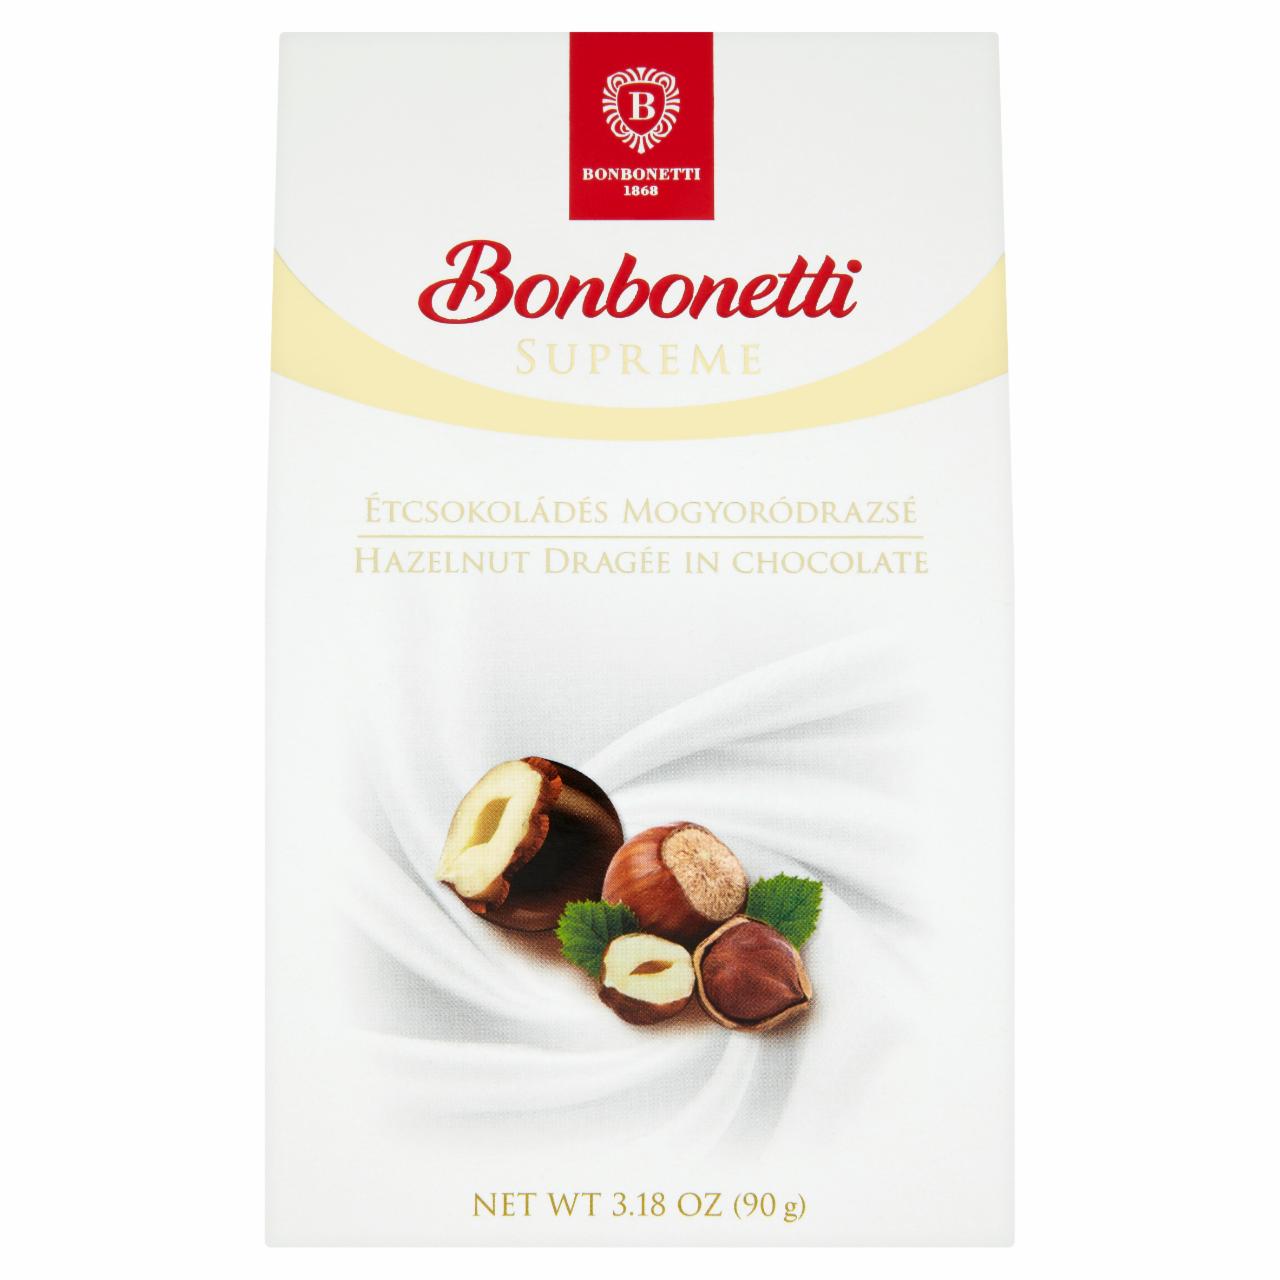 Képek - Bonbonetti Supreme étcsokoládés mogyoródrazsé 90 g